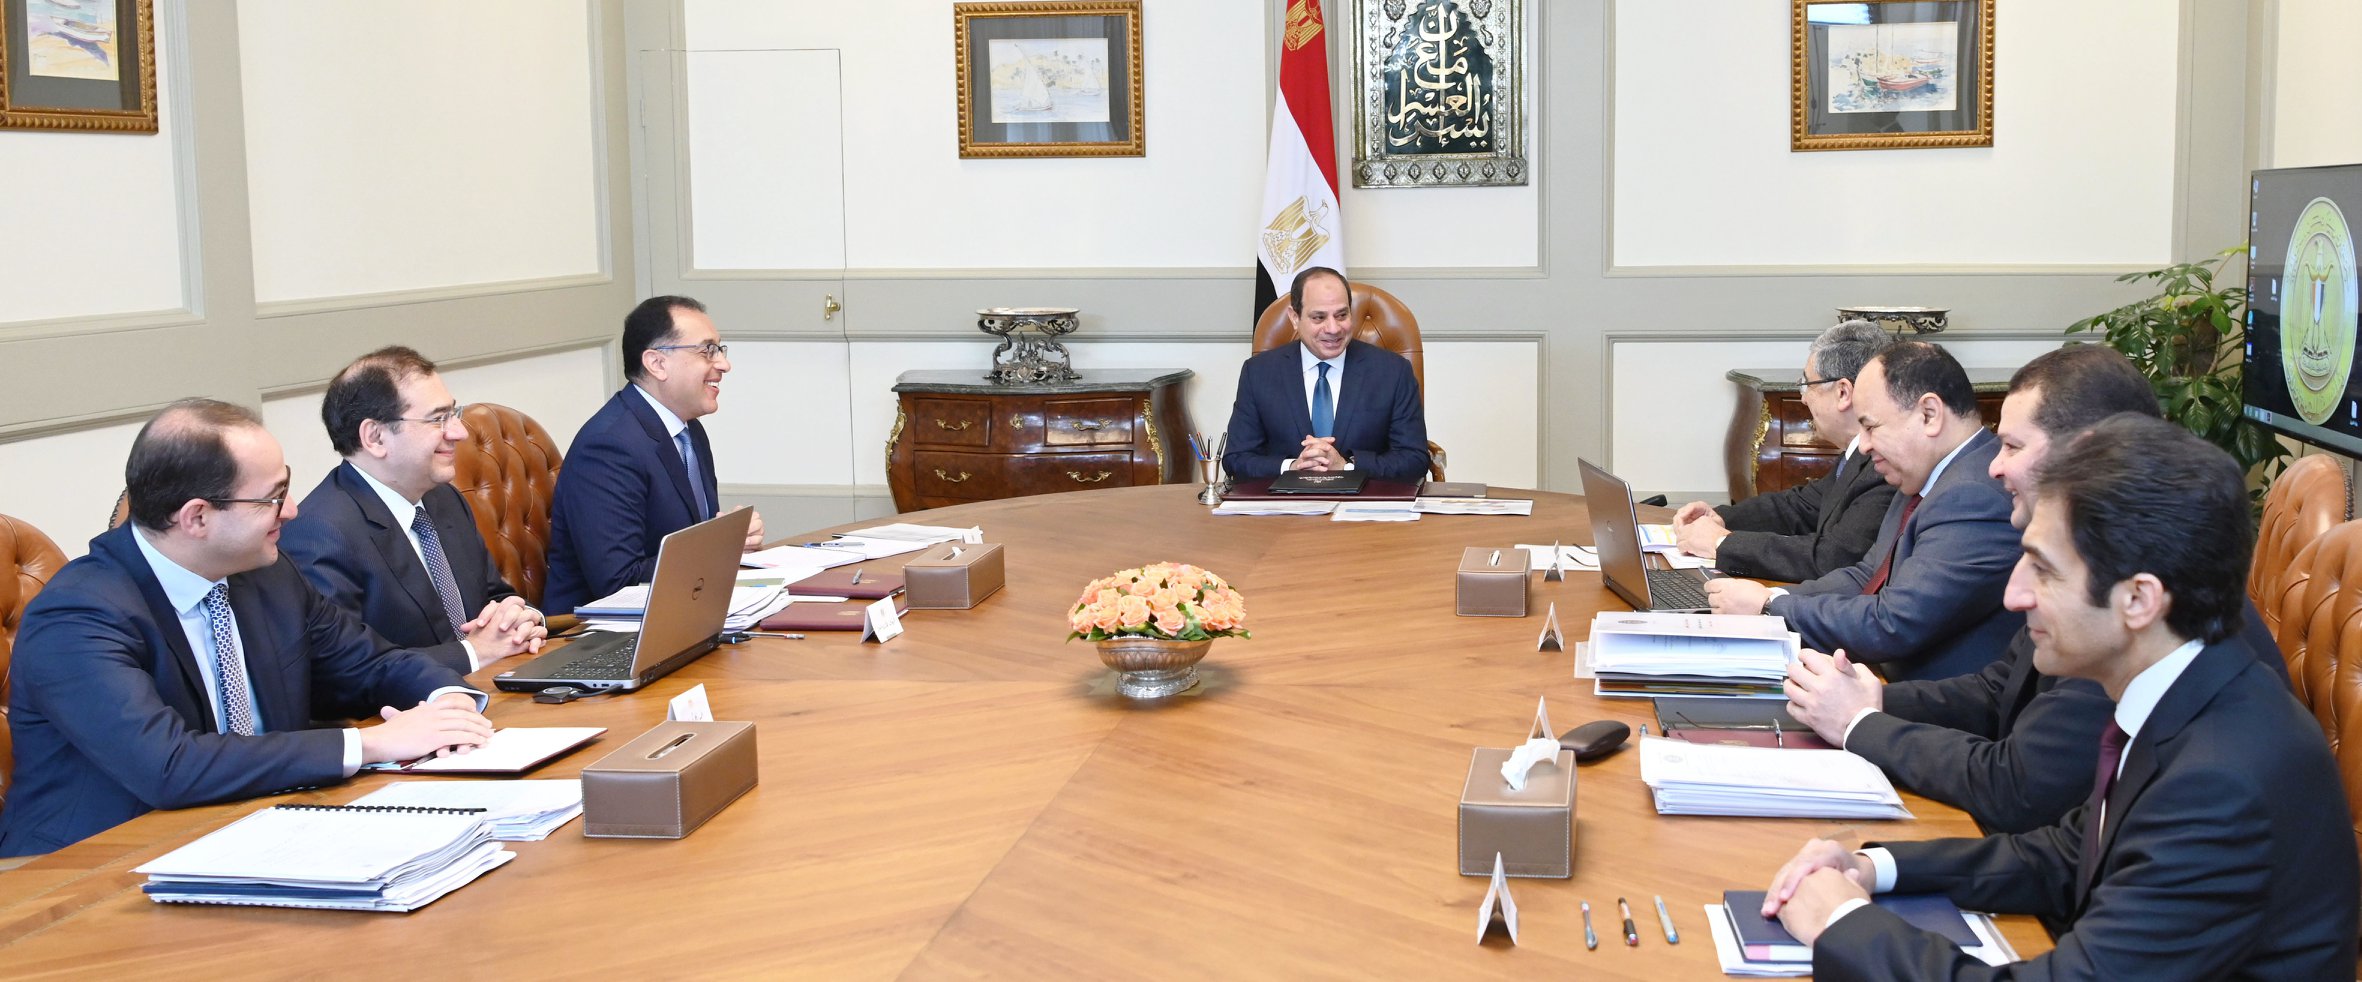   بسام راضى: الرئيس السيسى يتابع تطوير منظومة الكهرباء في مصر وتحديث بنيتها التحتية